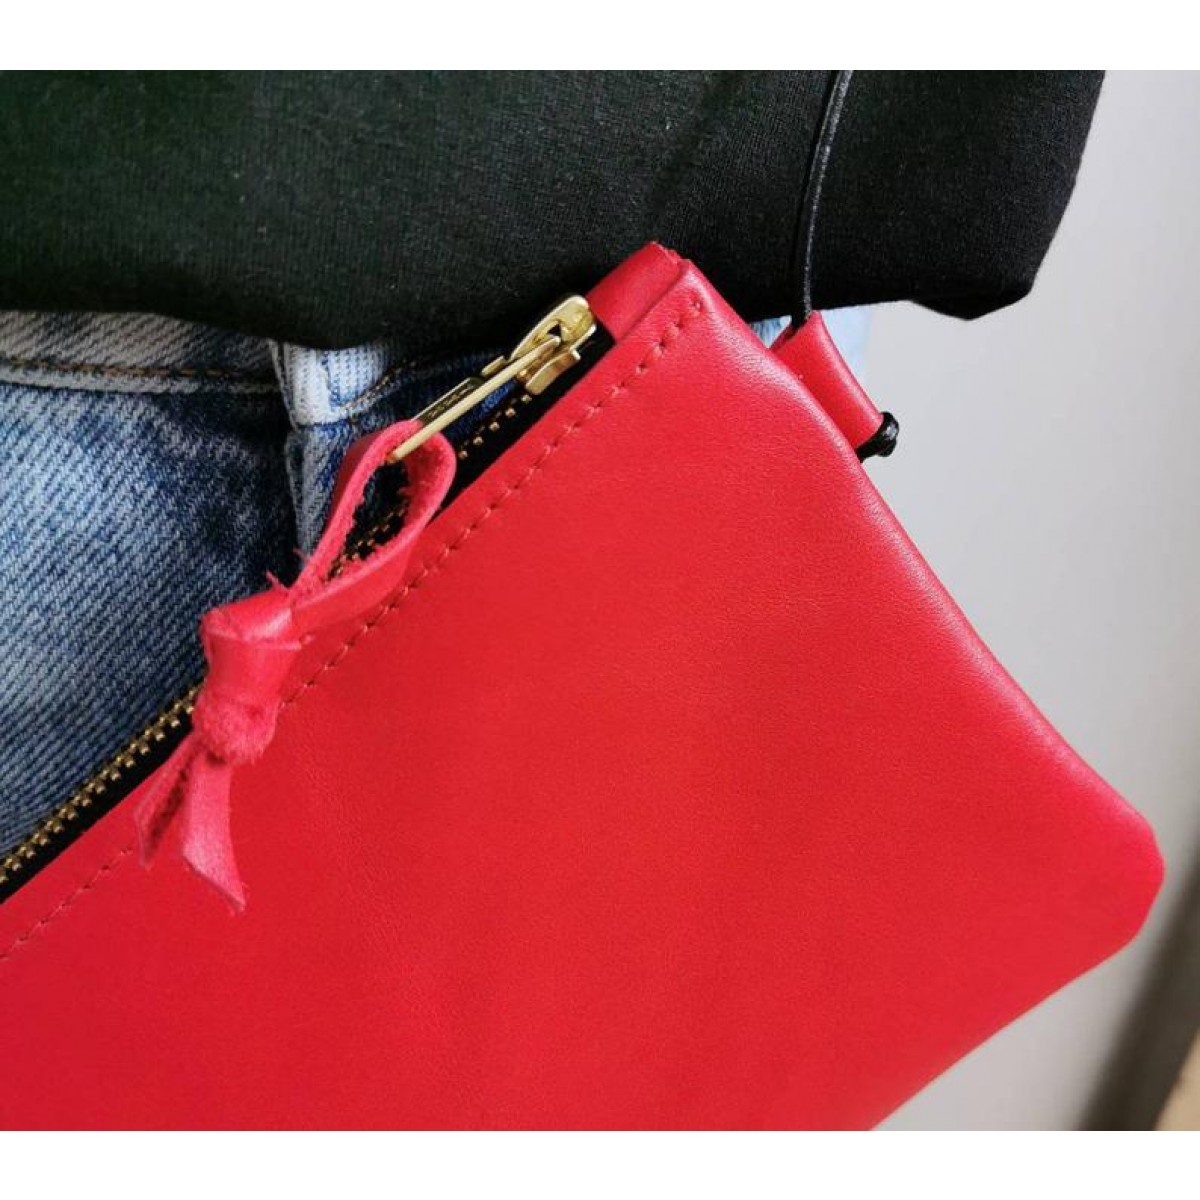 Minitasche // echt Leder rot // Smartphonetasche // Ausgehtasche // Tasche zum Reisen // Ledertasche rot // Minibag
